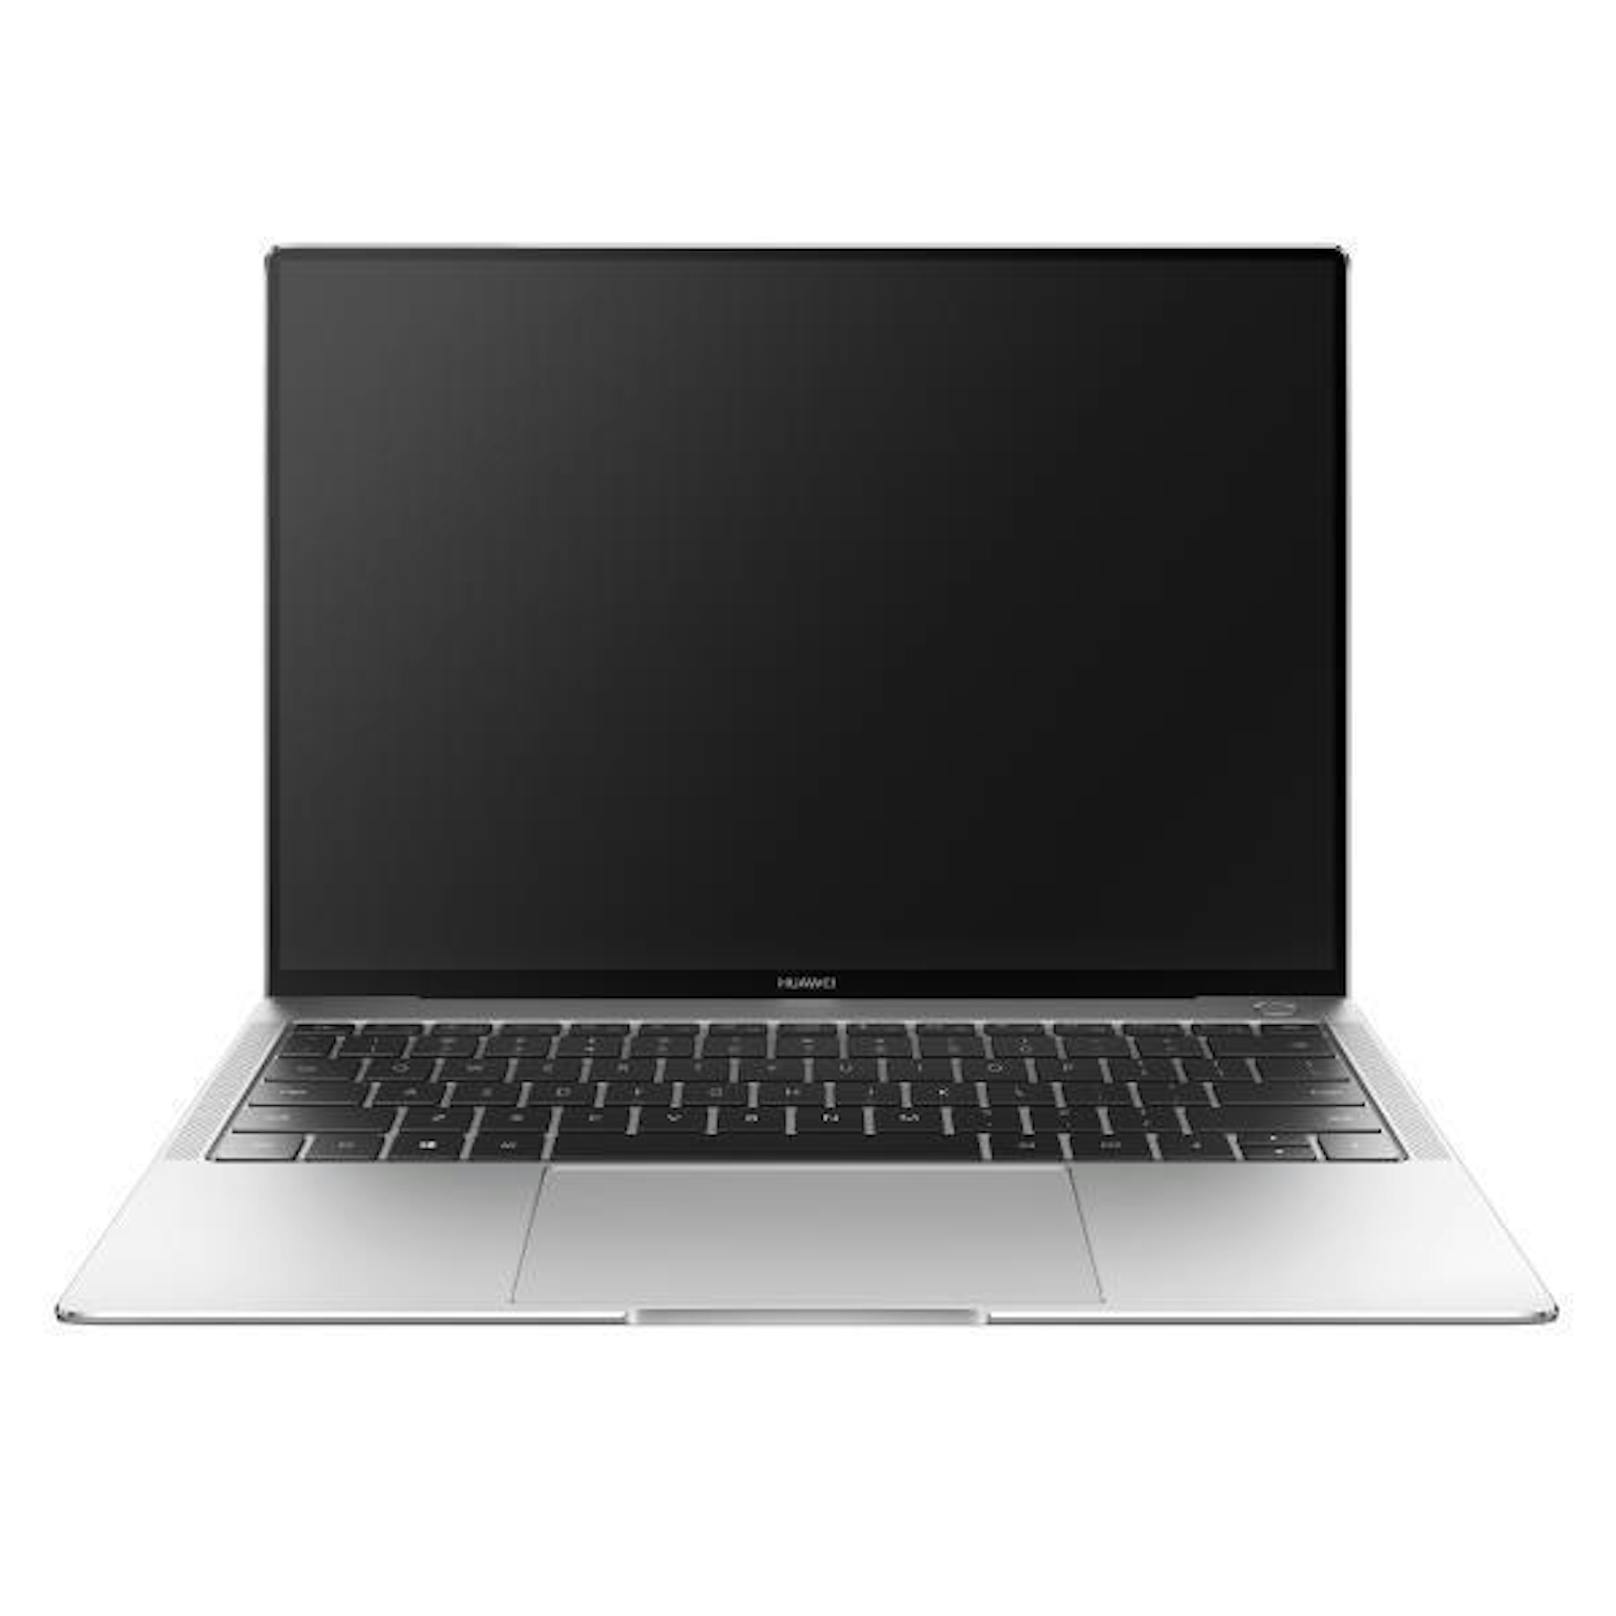 Das MateBook X Pro verfügt über ein 13,9 Zoll großes Display.